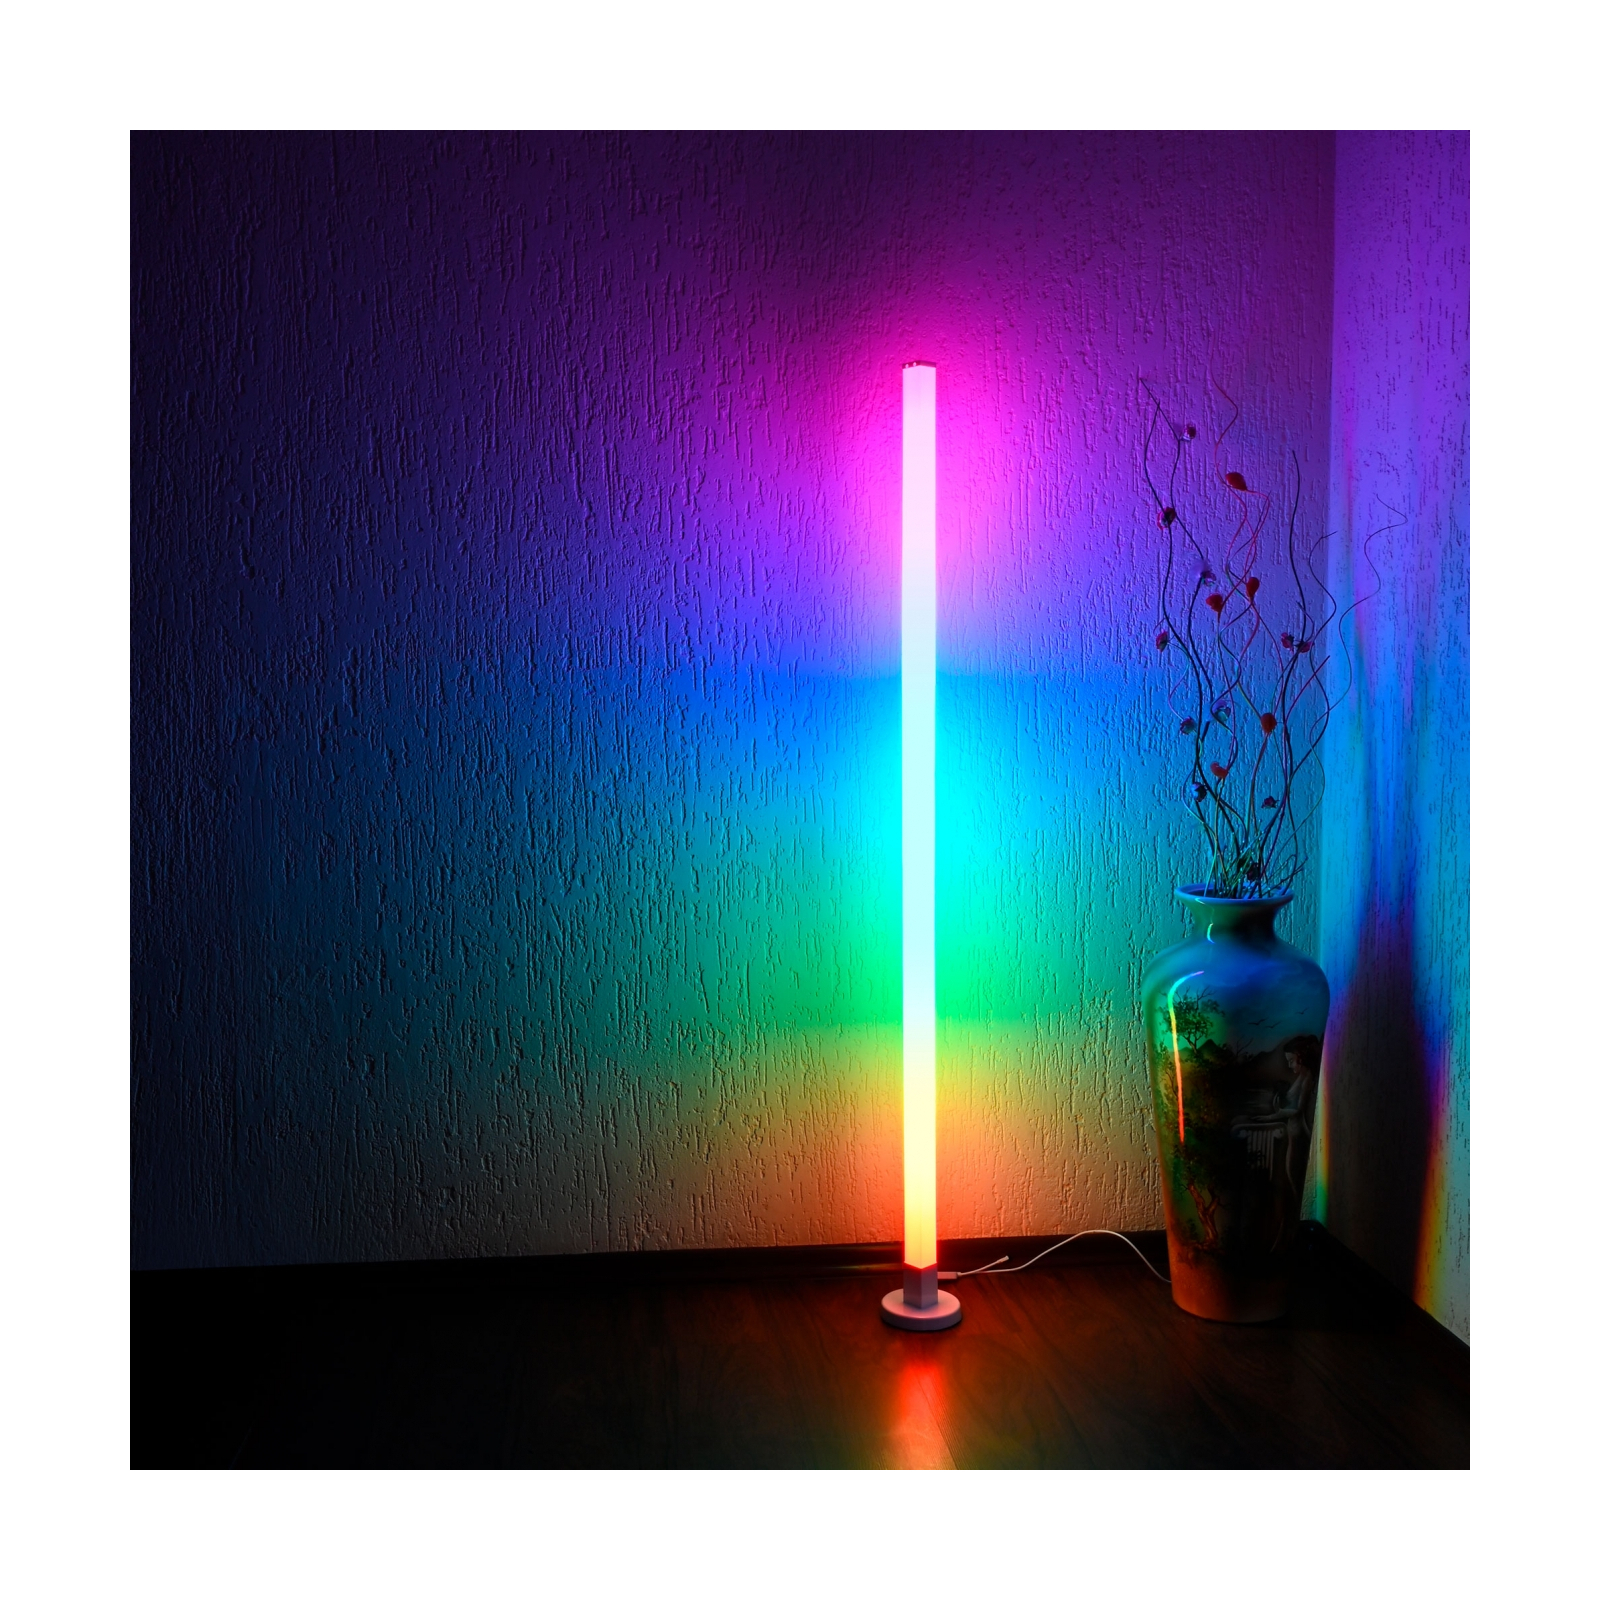 Лампочка Videx напольная RGB 10W (VL-TF20-RGB) изображение 7